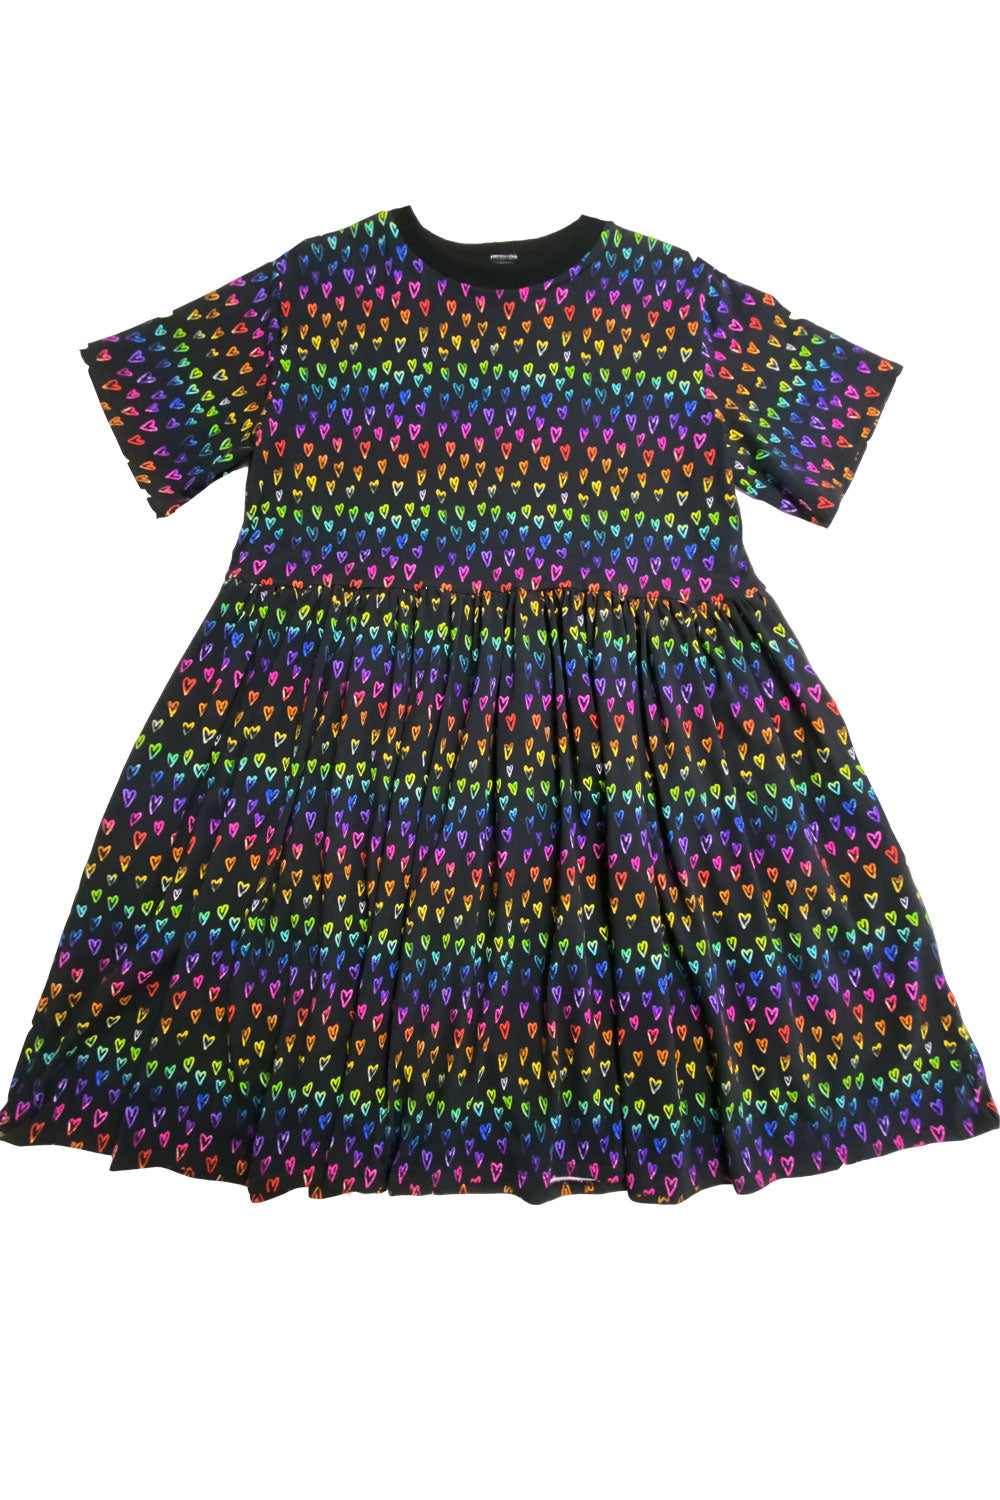 Rainbow Hearts Party Dress